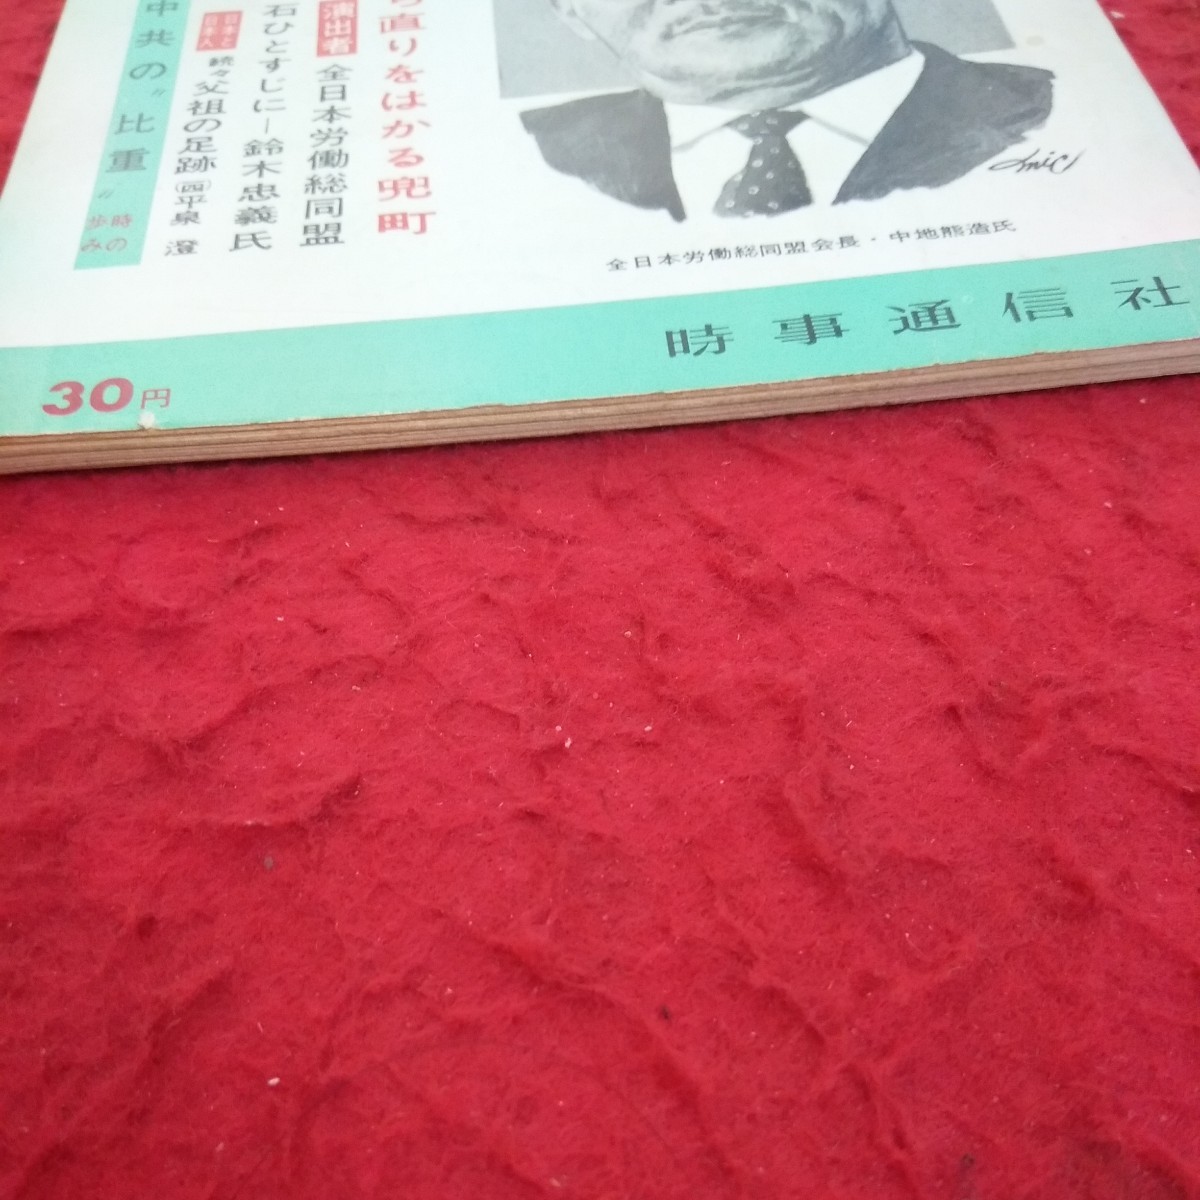 c-656 週刊時事 1964年発行 立ち直りをはかる兜町 全日本労働総同盟 石ひとすじに 中共の比重 など 時事通信社※2_画像2